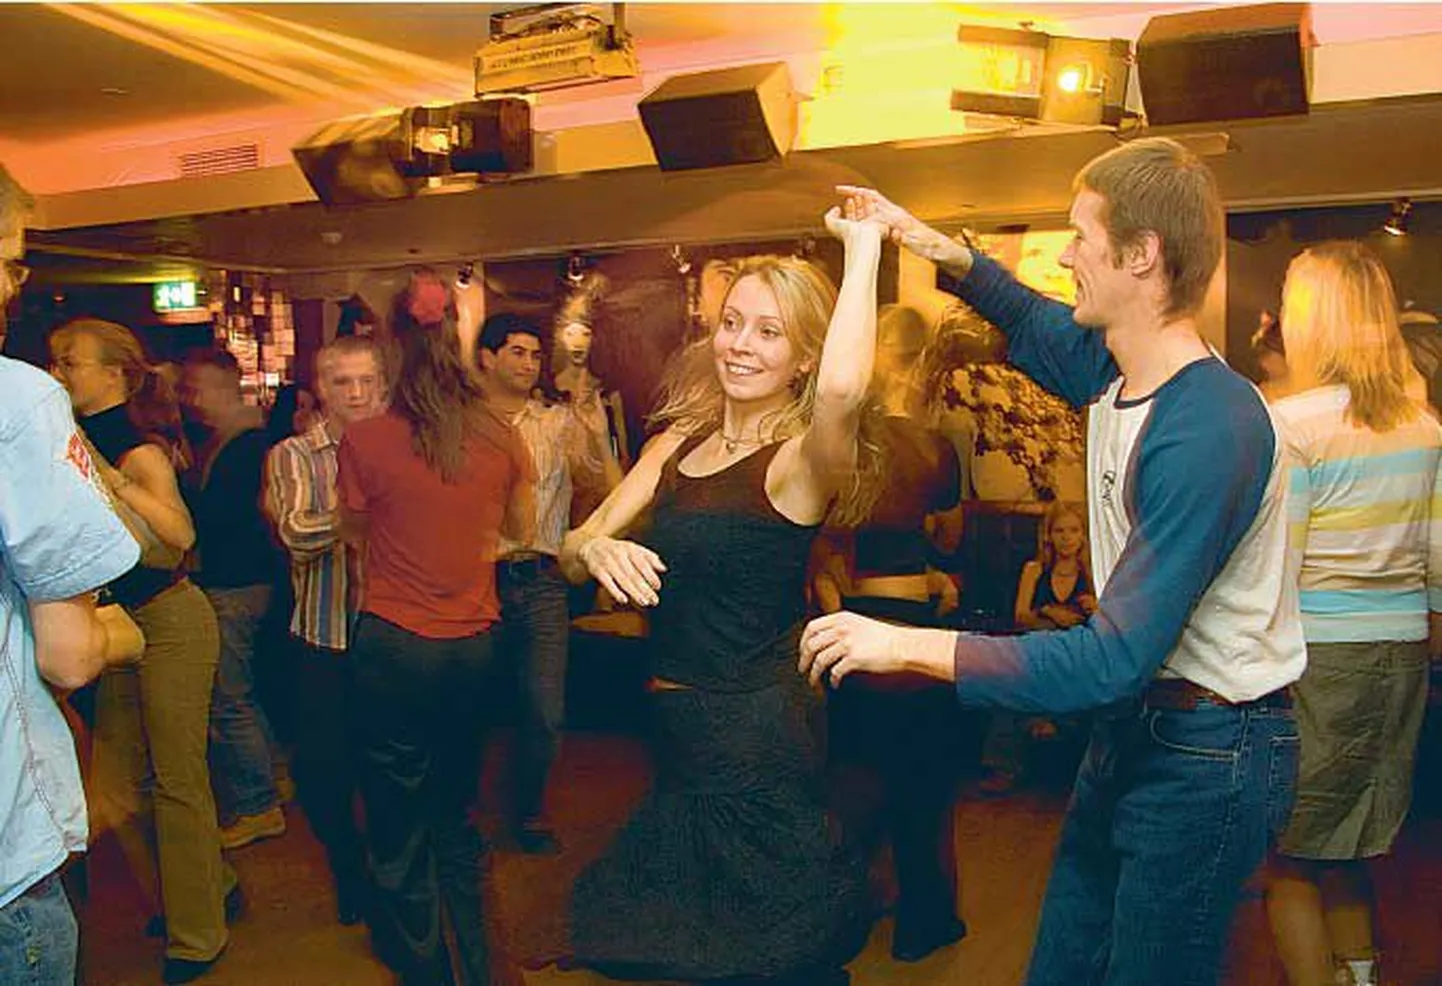 Noorte tantsuvõistlusi annab Tallinnas tikutulega taga otsida. See pilt on tehtud aeg-ajalt pealinnas toimuval salsaõhtul, nüüd kutsuvad TTÜ tudengid huvilisi järjekordsele tantsuvõistlusele ööklubisse Parlament.